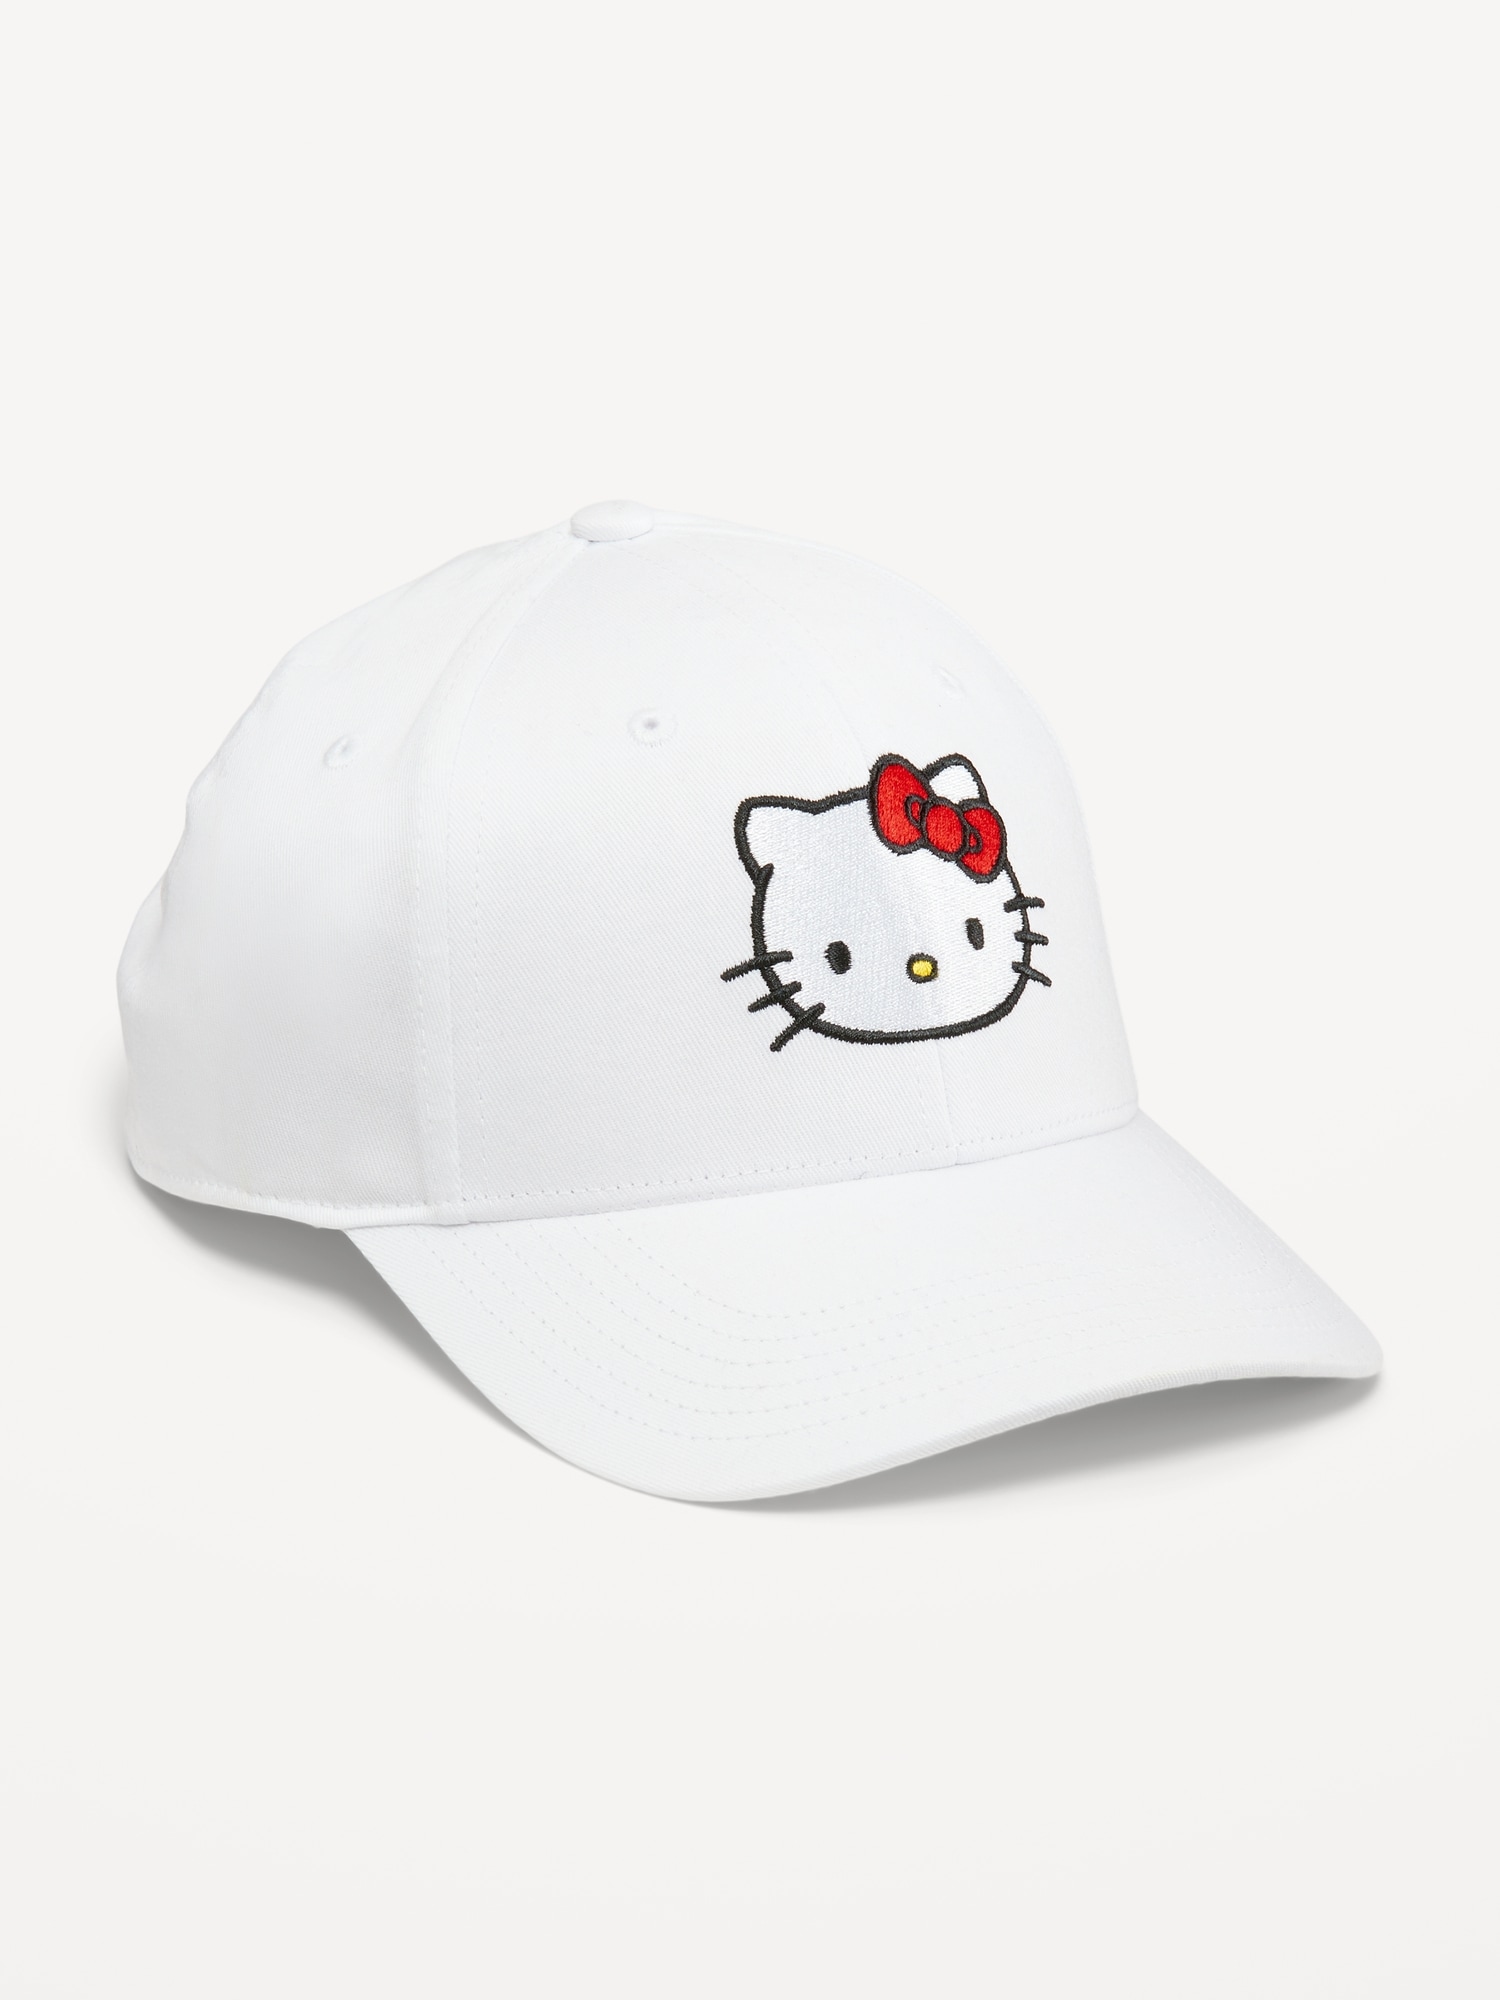 Old Navy Hello Kitty® Baseball Cap for Girls white. 1